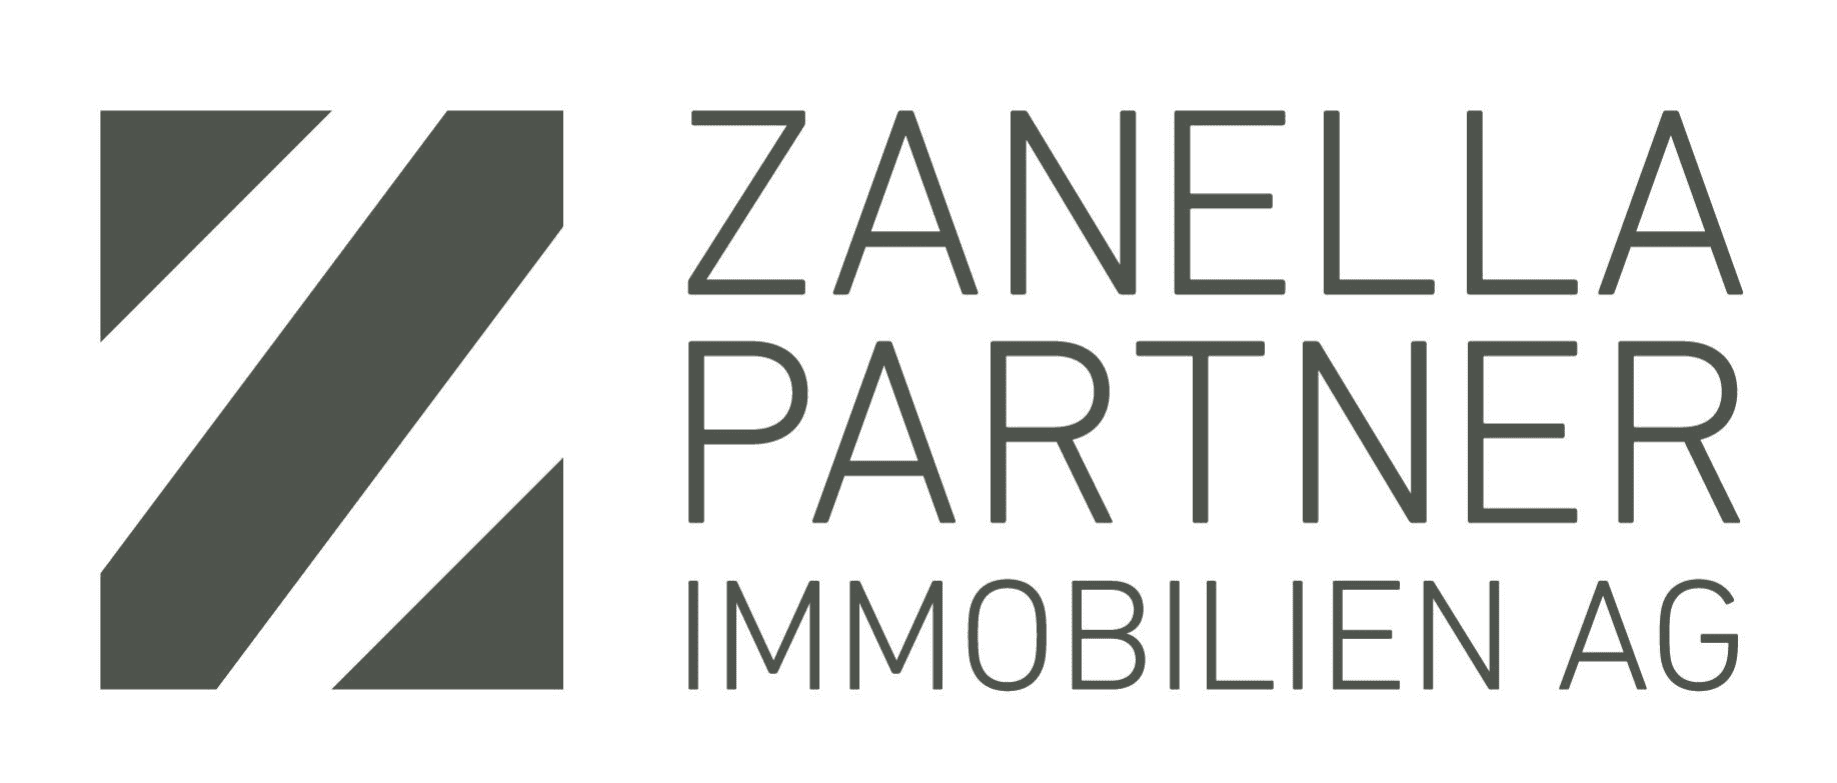 Zanella Partner Immobilien AG